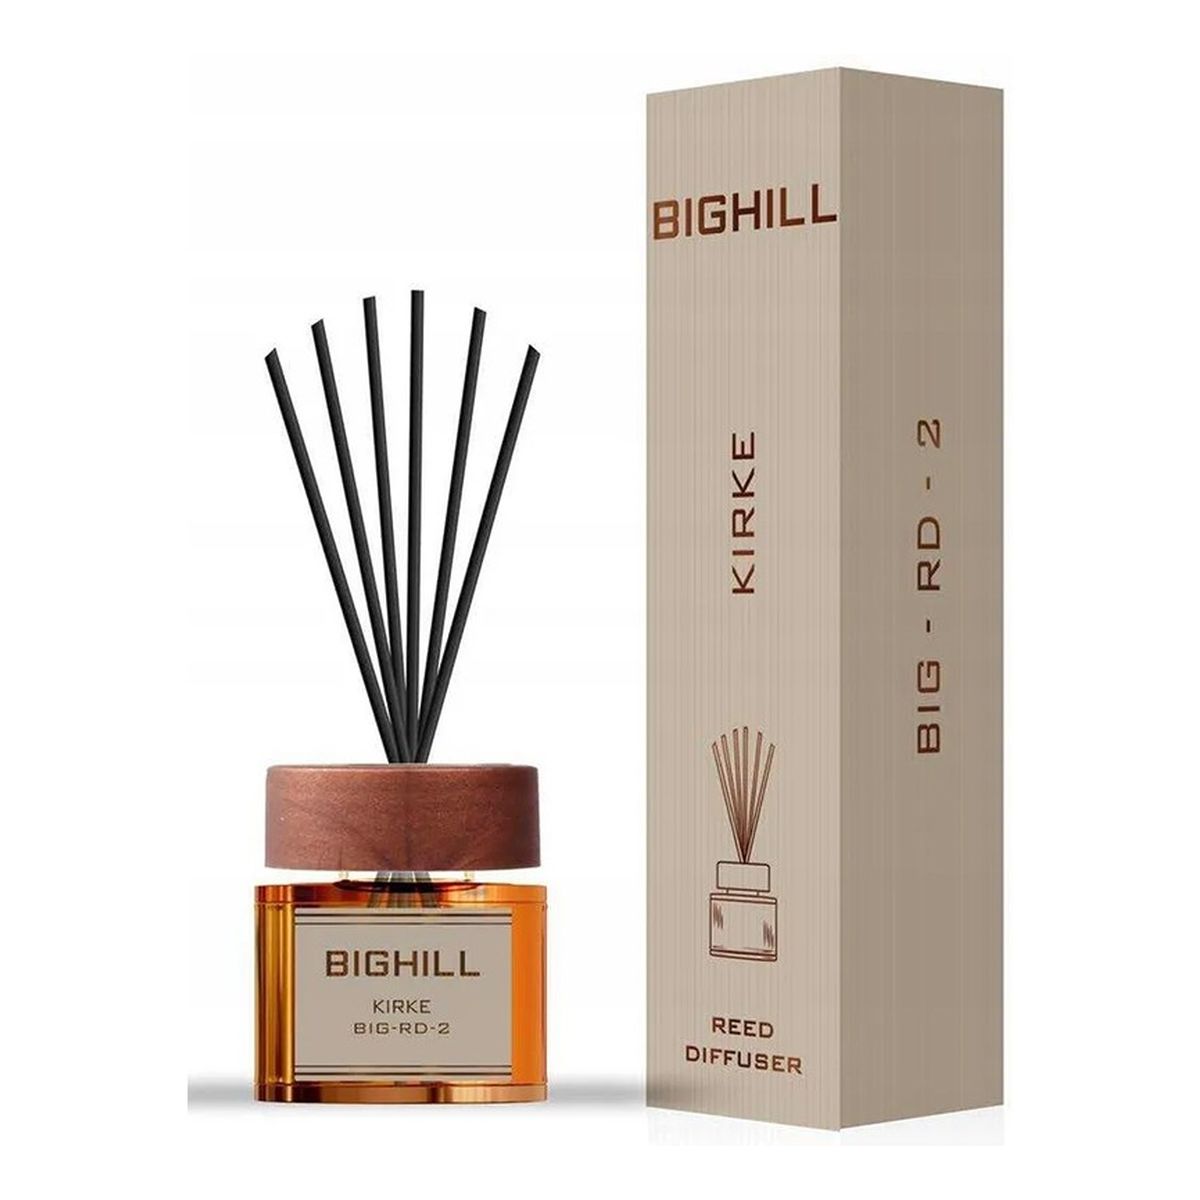 Bighill Ekskluzywny dyfuzor zapachowy z patyczkami Kirke + More Than 2x120ml